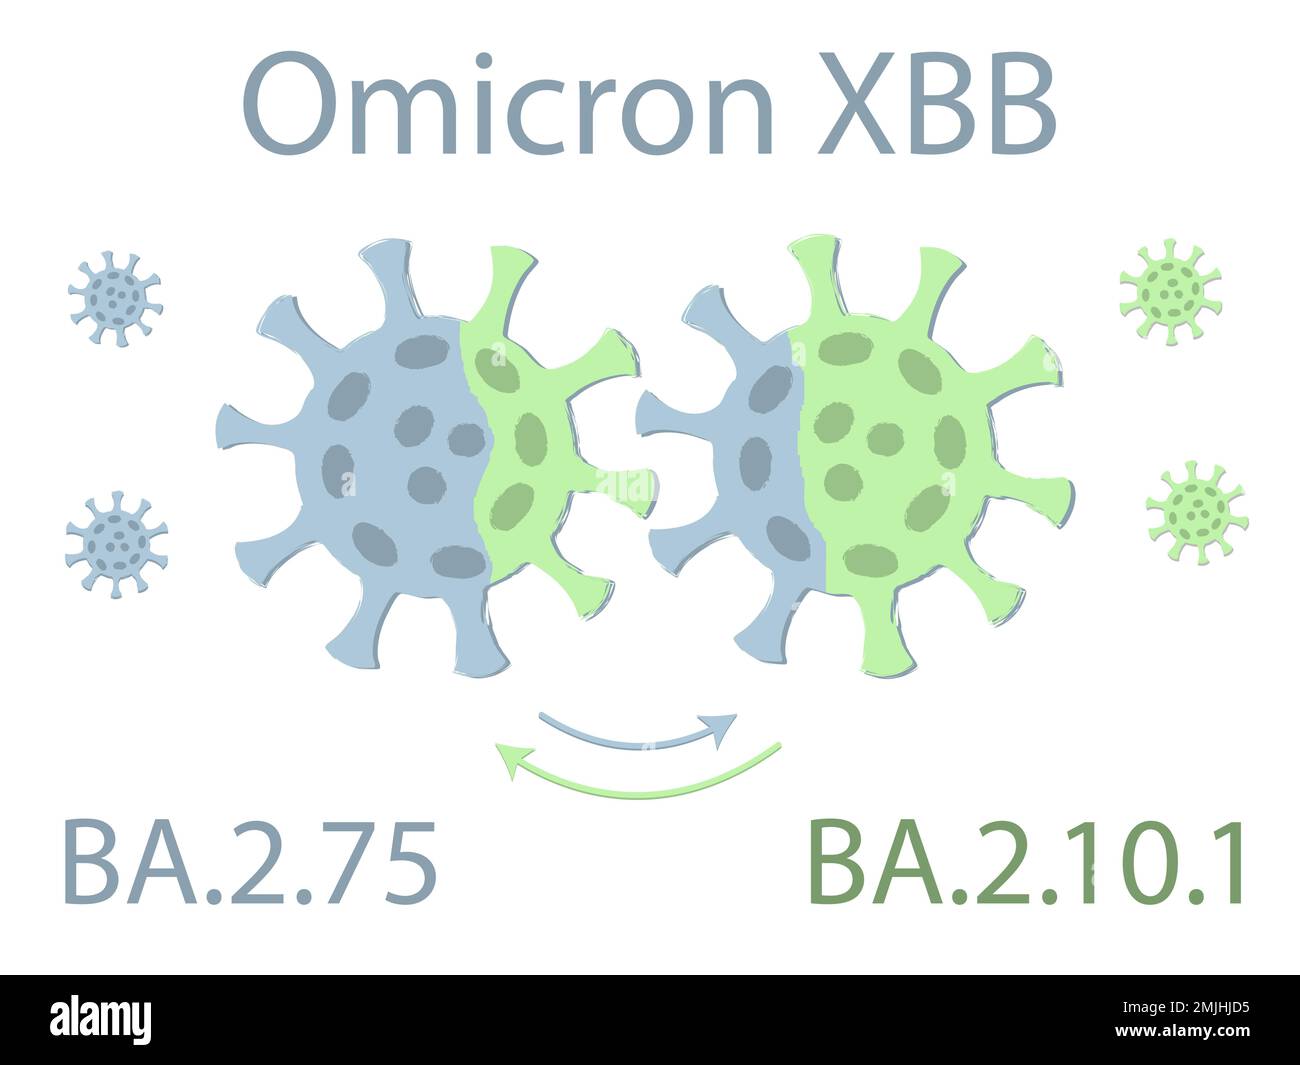 La variante OMICRON XBB est un hybride des deux sous-variantes d'Omicron : BA.2,75 et BA.2.10.1. Schéma. Deux virus échangent leur ADN. L'excha Illustration de Vecteur